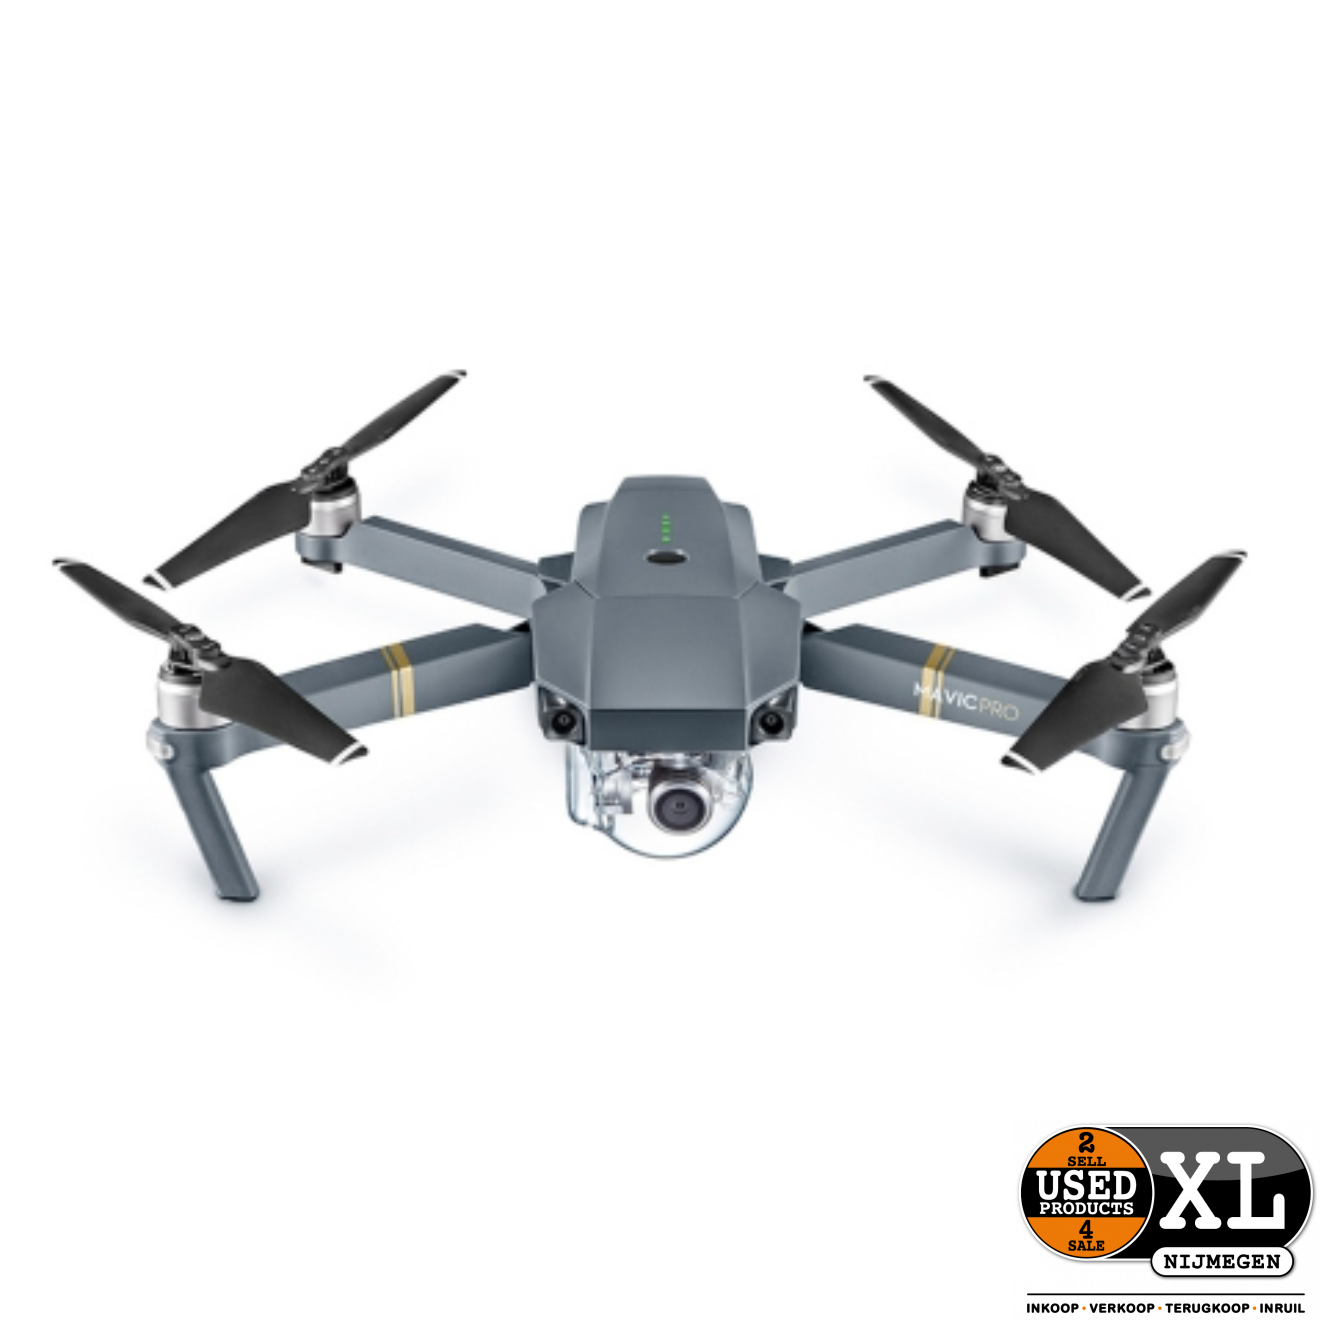 kandidaat voor de hand liggend Hobart DJI Mavic Pro Drone van Bouwstenen | Nieuw in Doos - Used Products Nijmegen  XL